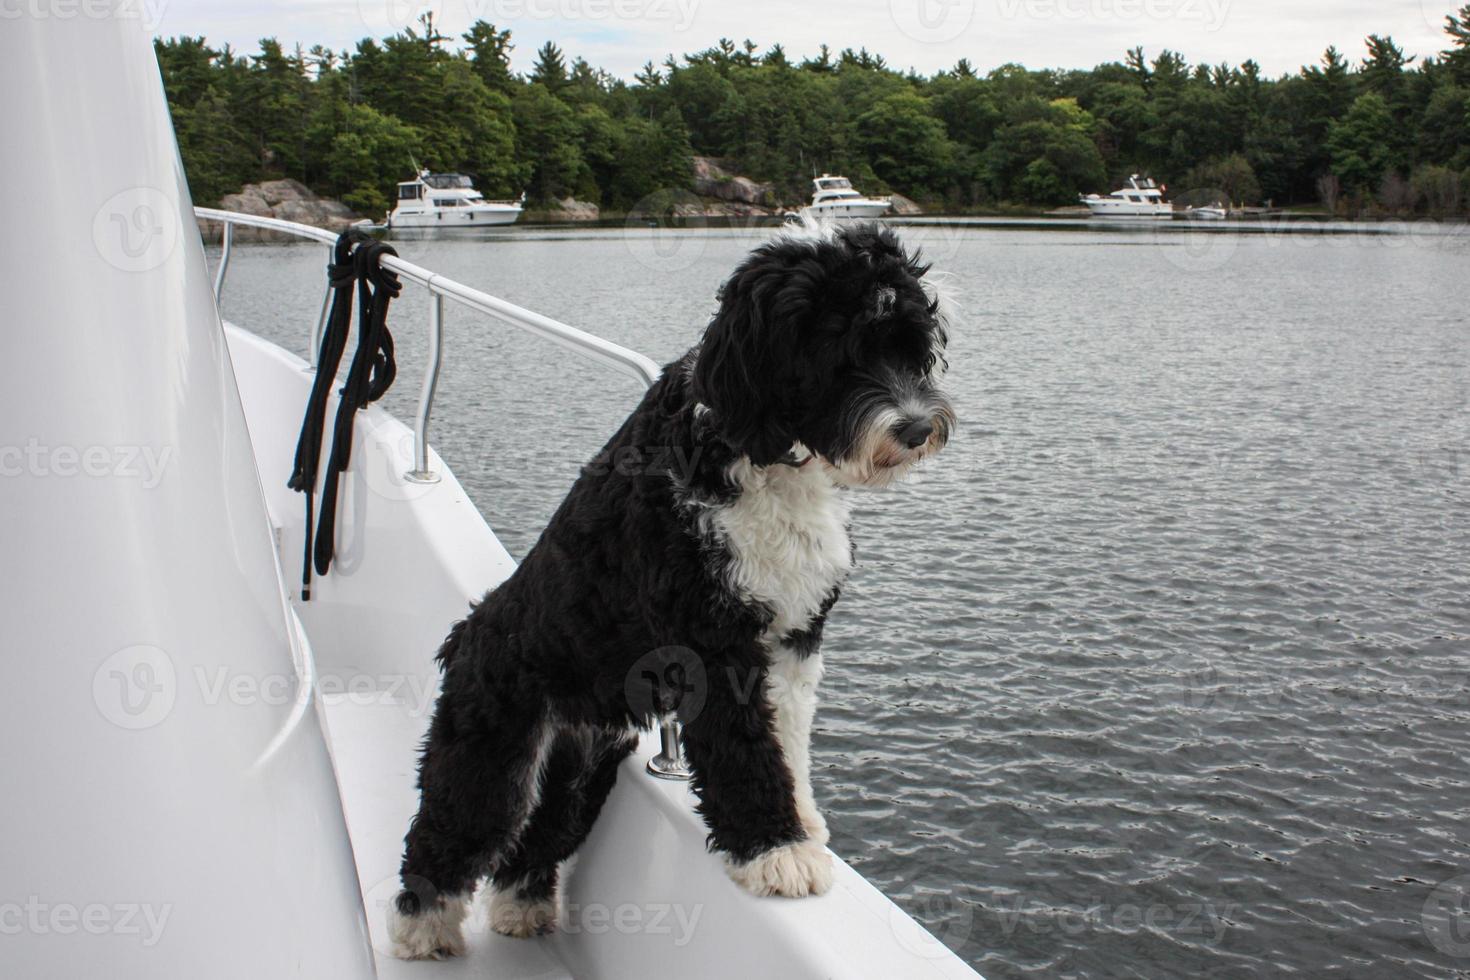 perro mirando terminado el lado de un barco foto